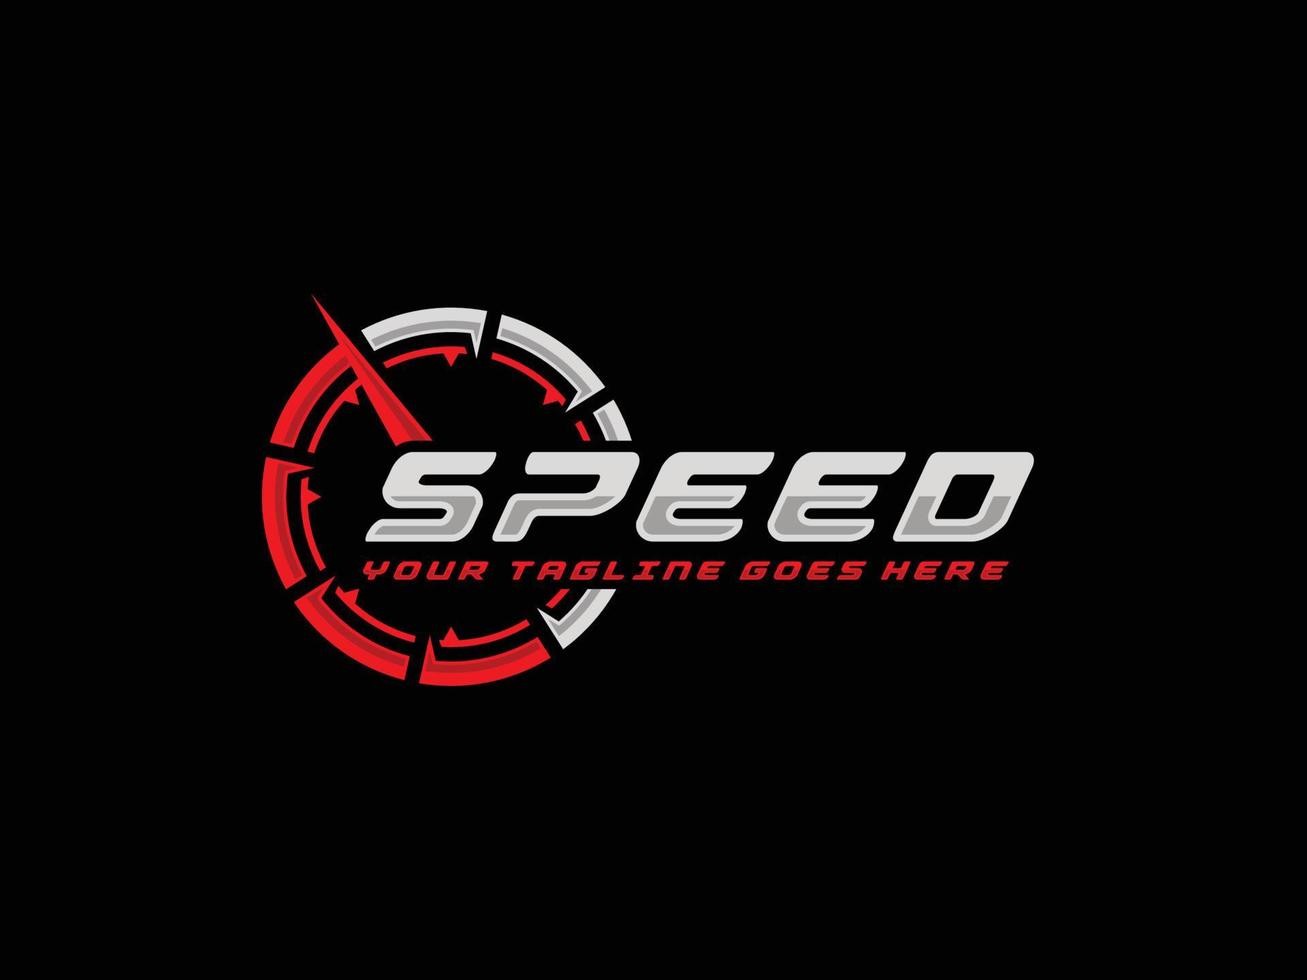 illustration vectorielle de vitesse logo design vecteur